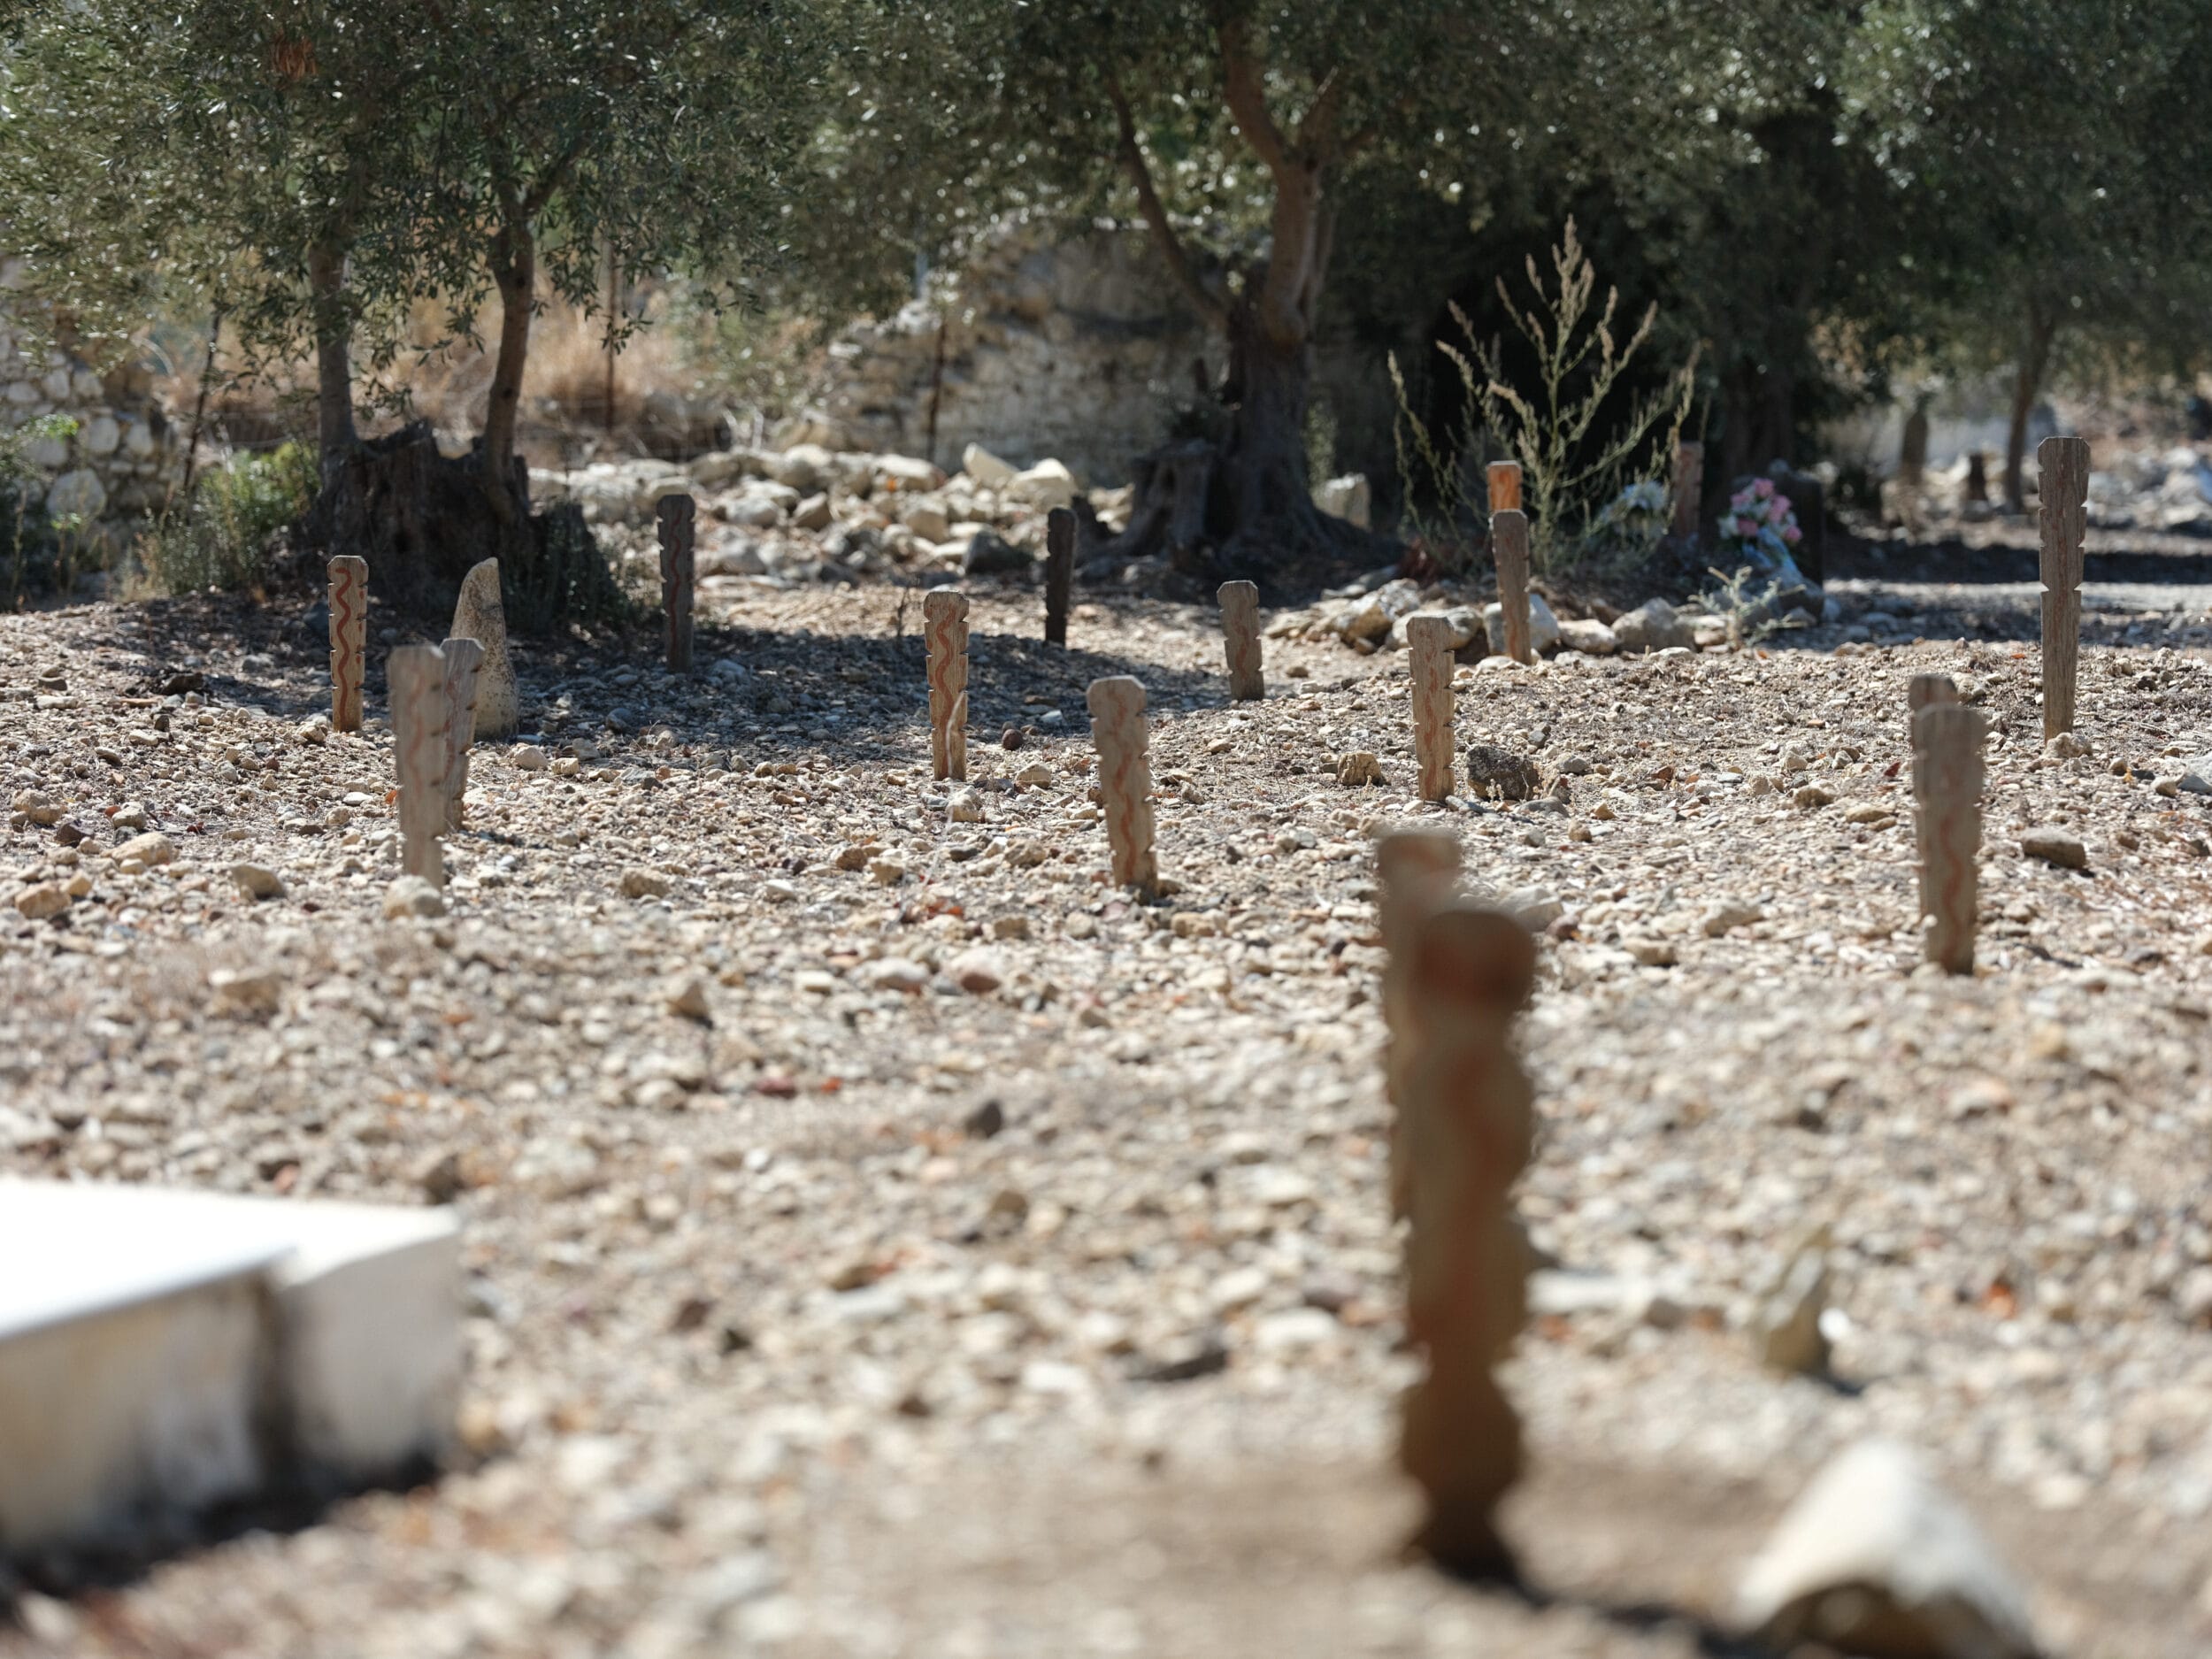 Bodensperspektive anonymer islamischer Gräber auf Kos: geschwungene Hölzer mit einer rötlichen Wellenlinie stecken in einem kieslastigen staubigen Boden, es gibt keine sichtbaren Grabhügel oder befestigte Gräber.